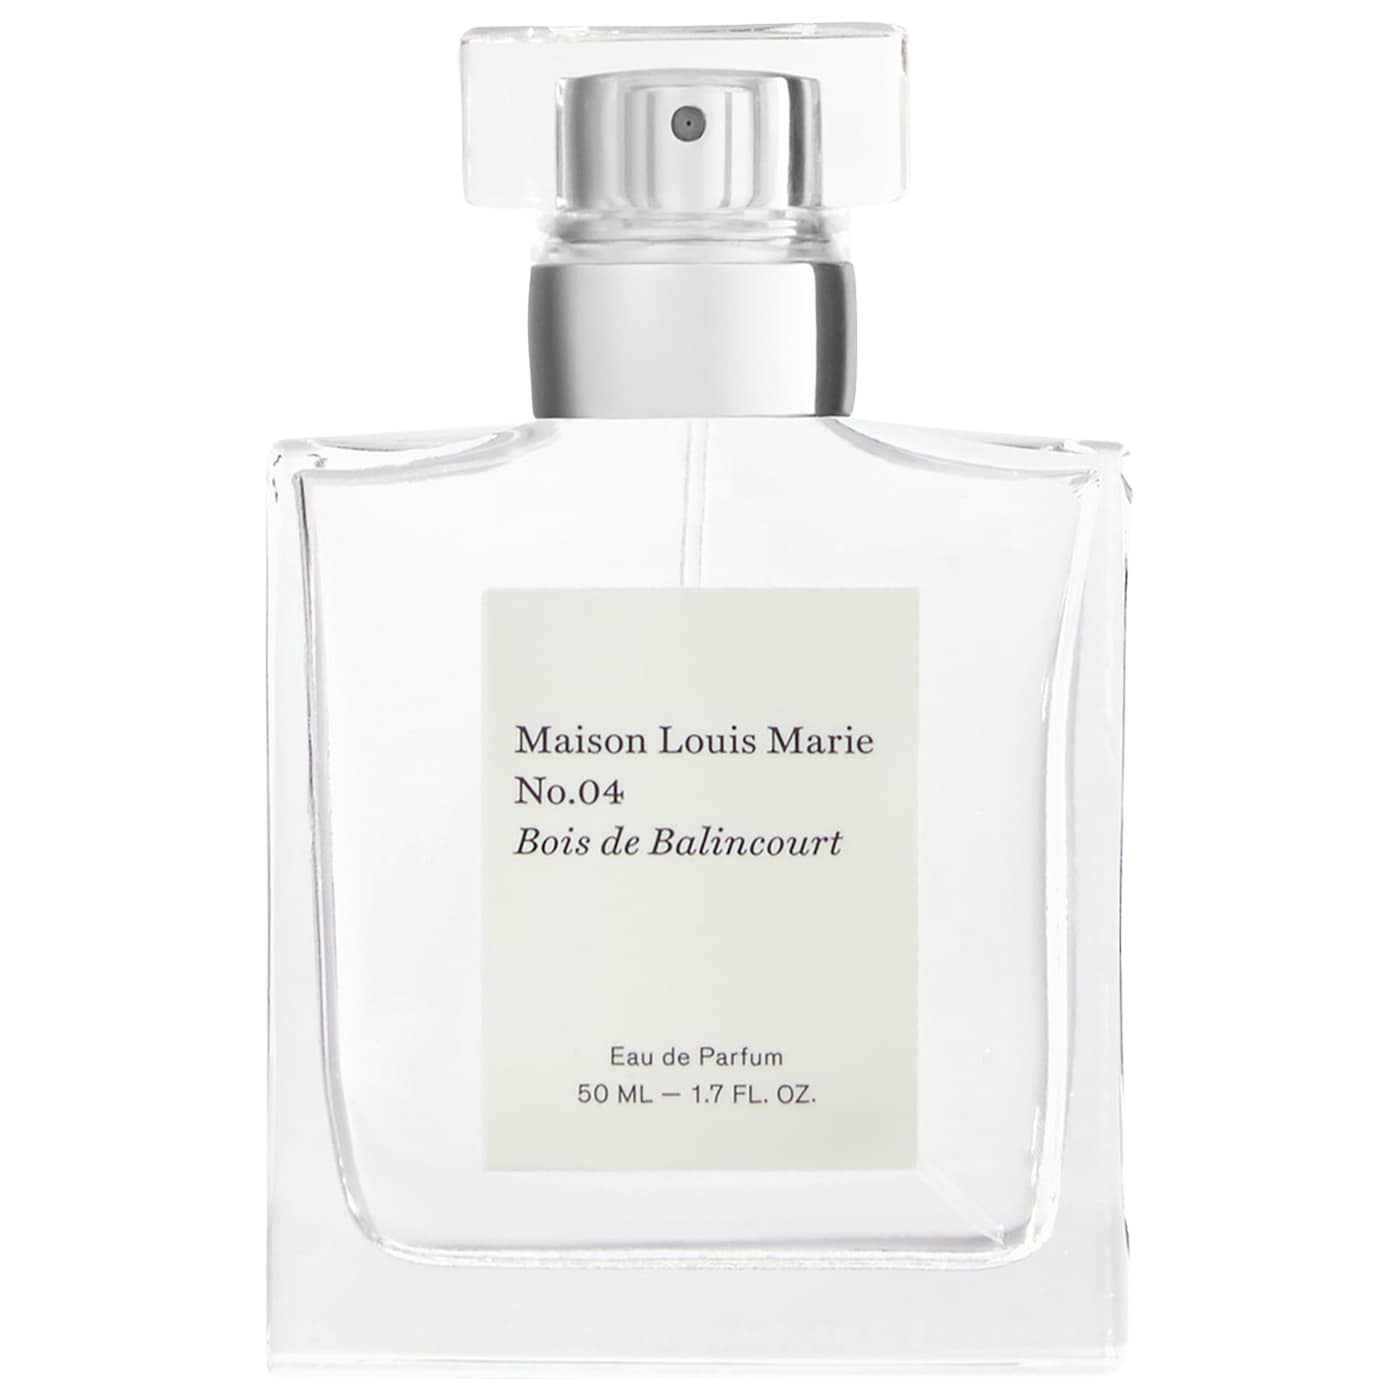 Maison Louis Marie - No.04 Bois de Balincourt Eau de Parfum